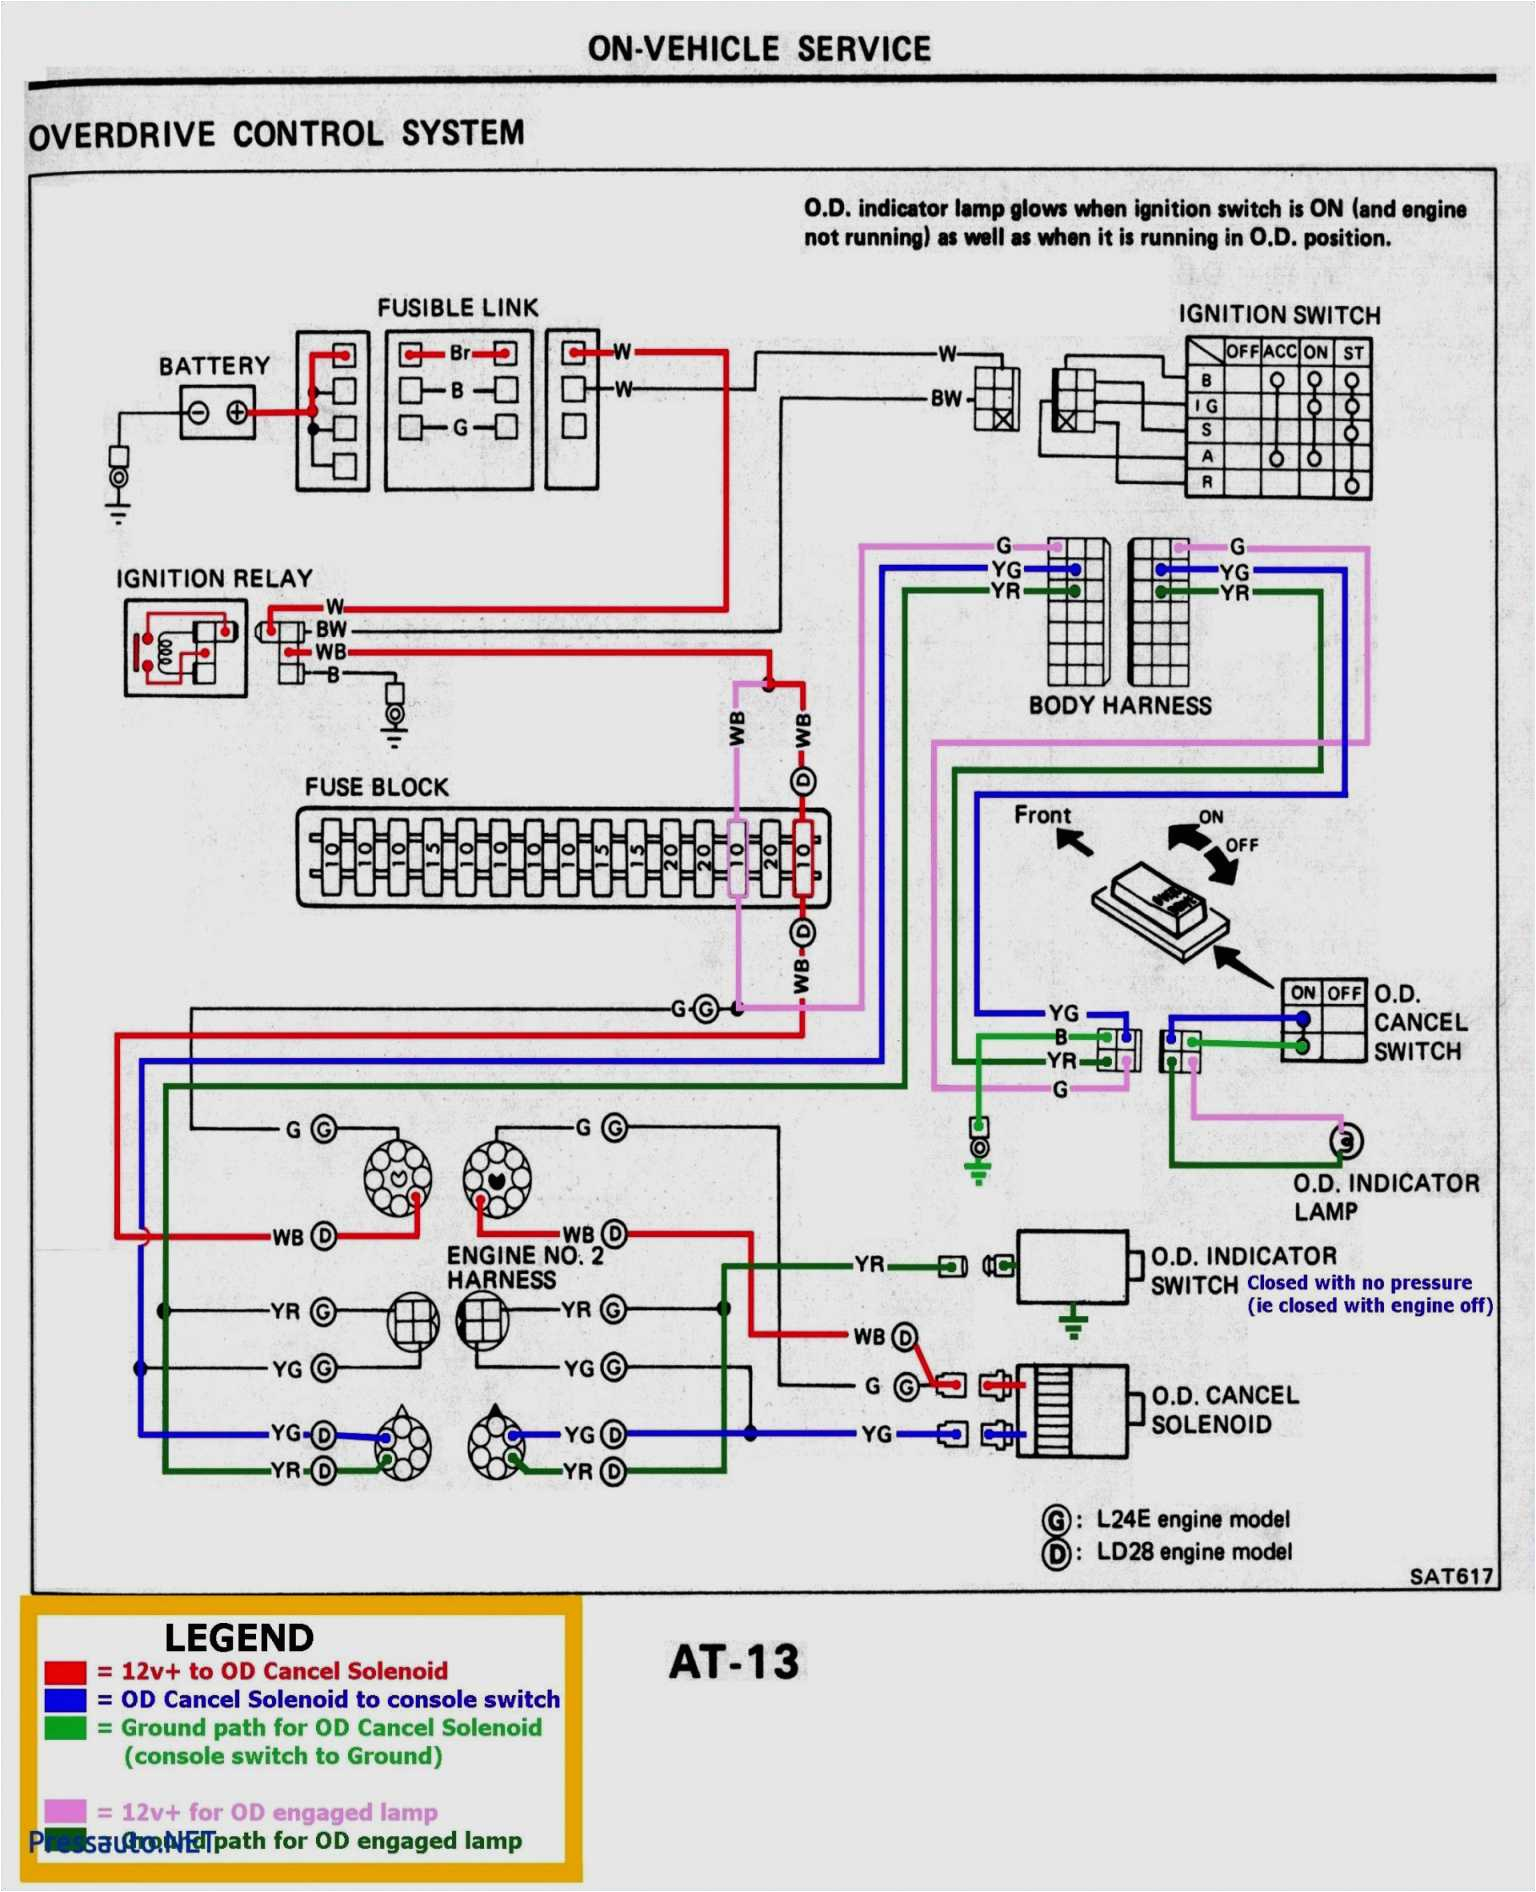 95 mustang radio wiring diagram wiring diagrams stereo wiring diagram 97 mustang